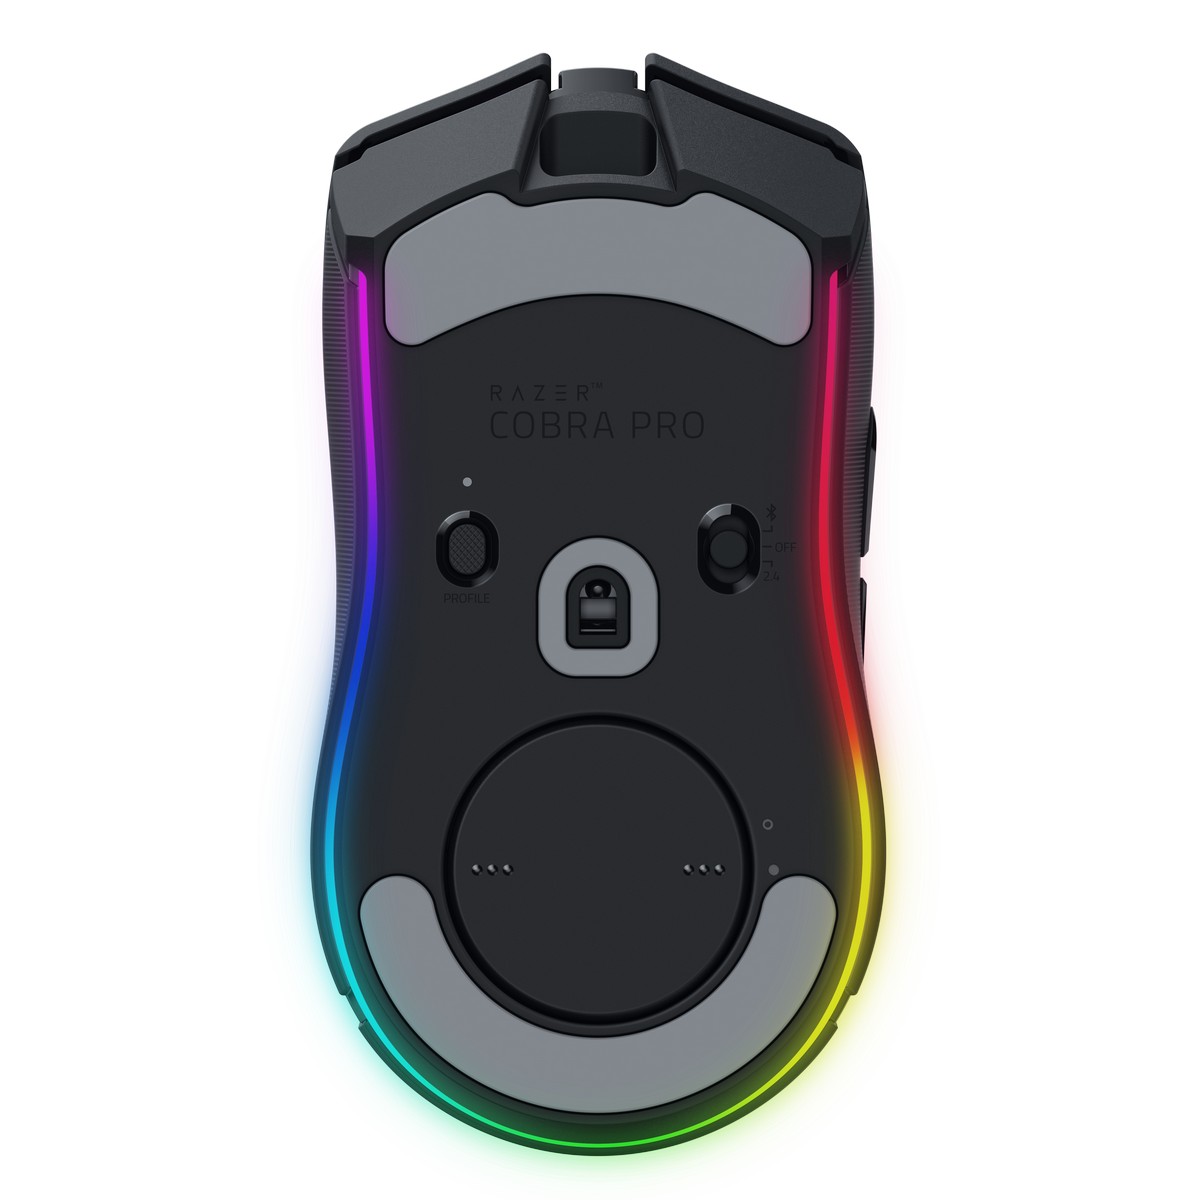 Razer - Razer Cobra Pro Lightweight Optical RGB Wireless Gaming Mouse (RZ01-04660100-R3G1)